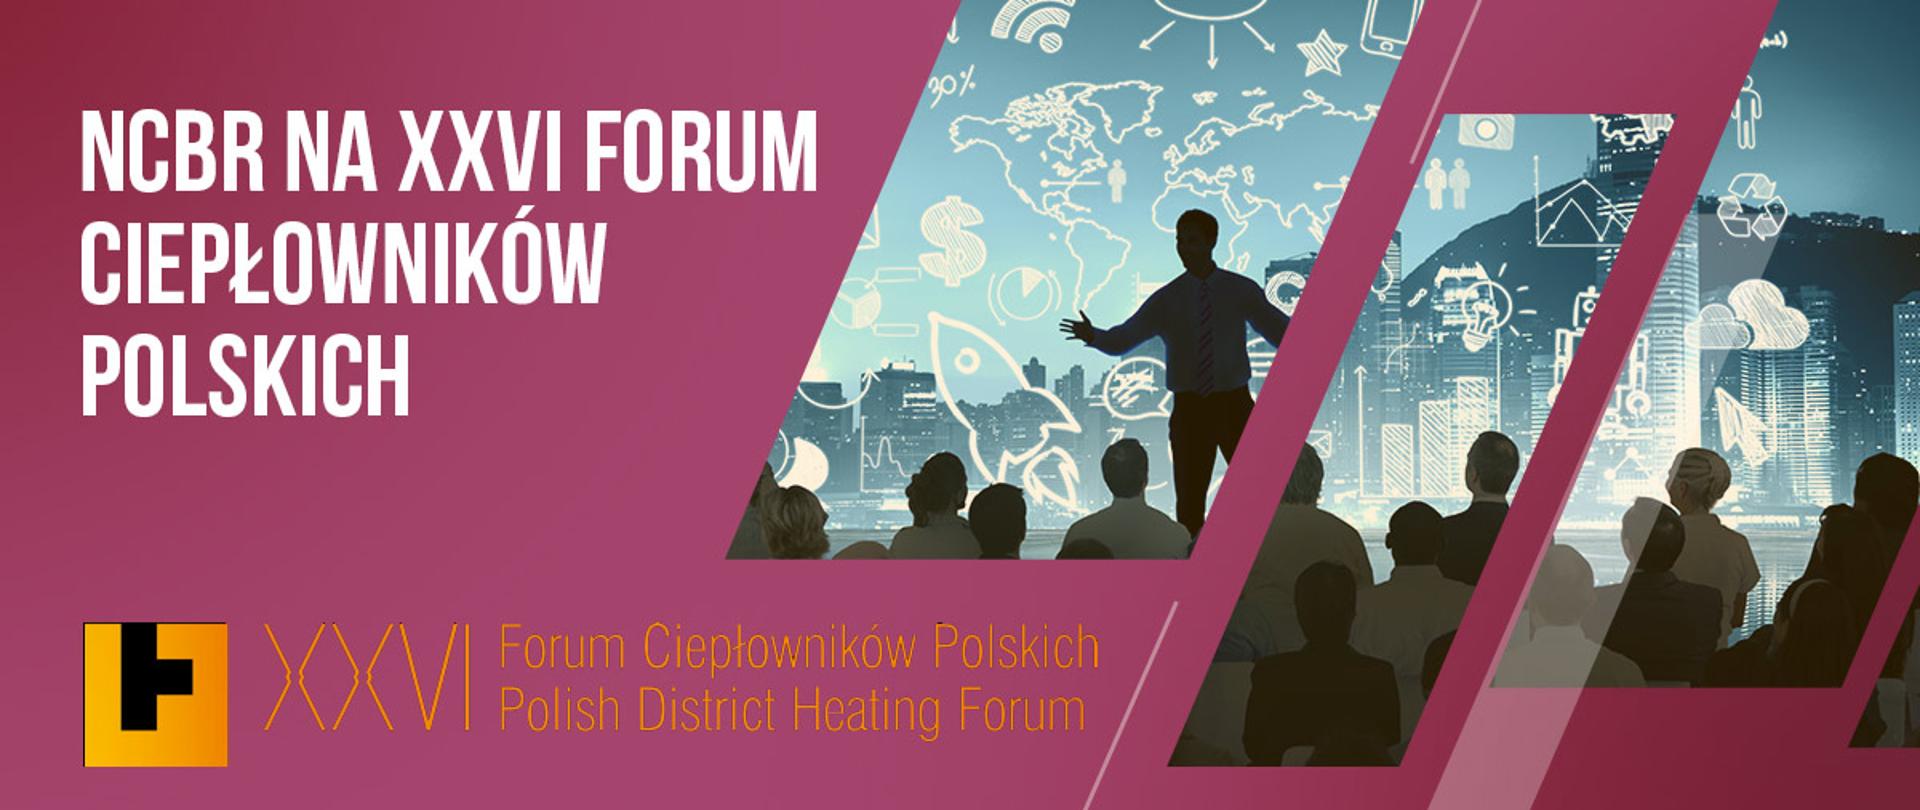 NCBR na XXVI Forum Ciepłowników Polskich w Międzyzdrojach